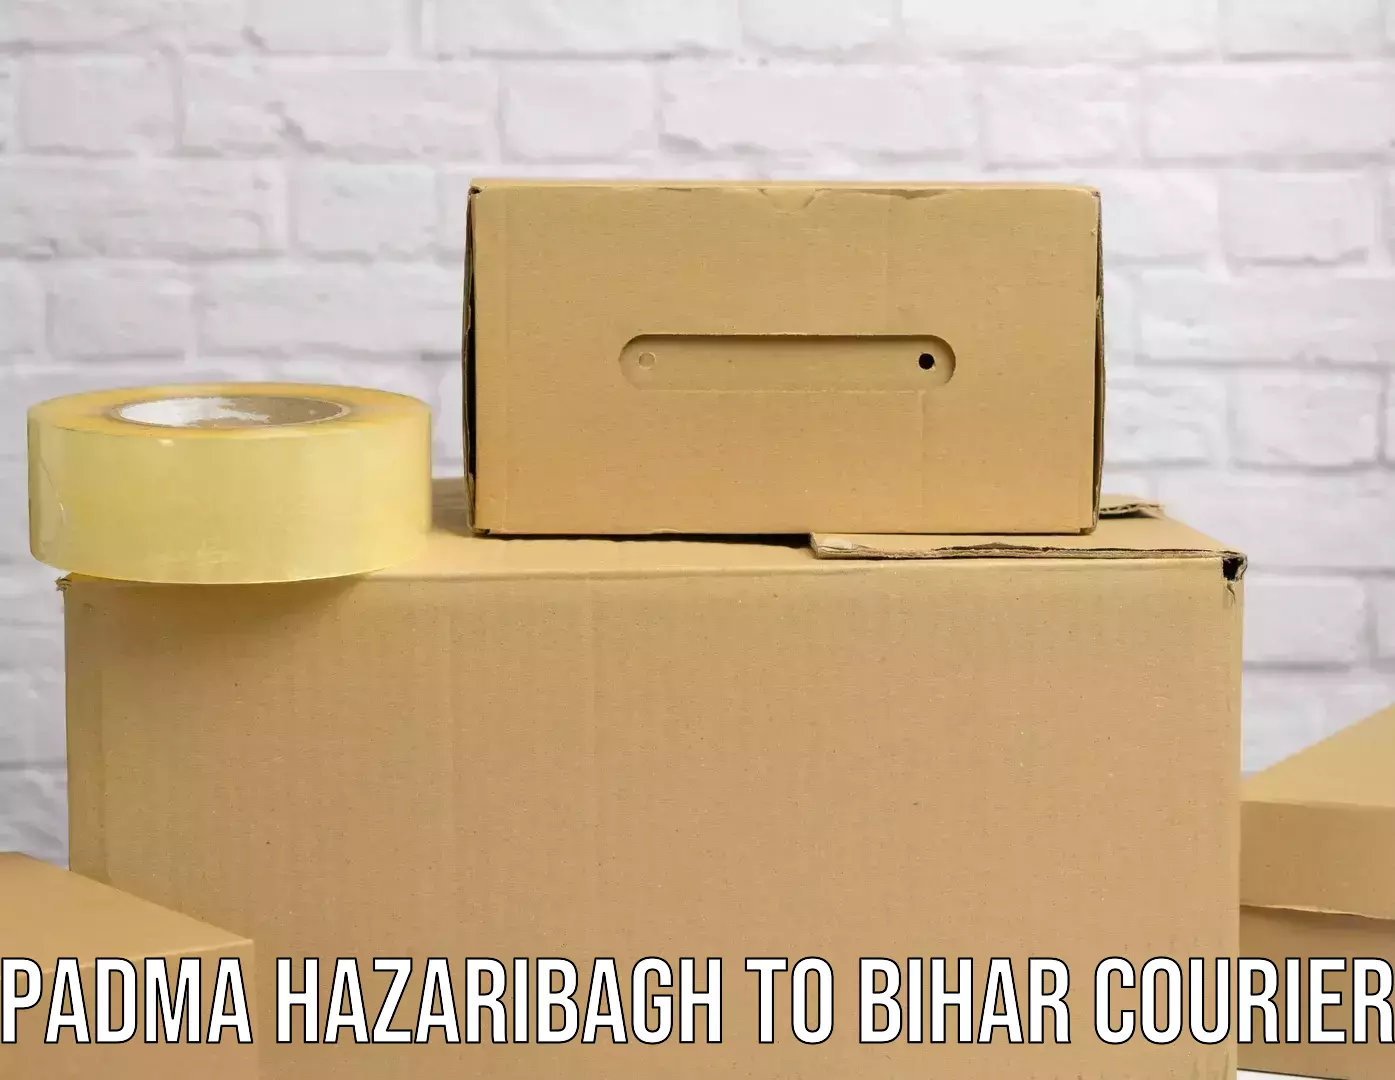 Door-to-door freight service Padma Hazaribagh to Mairwa